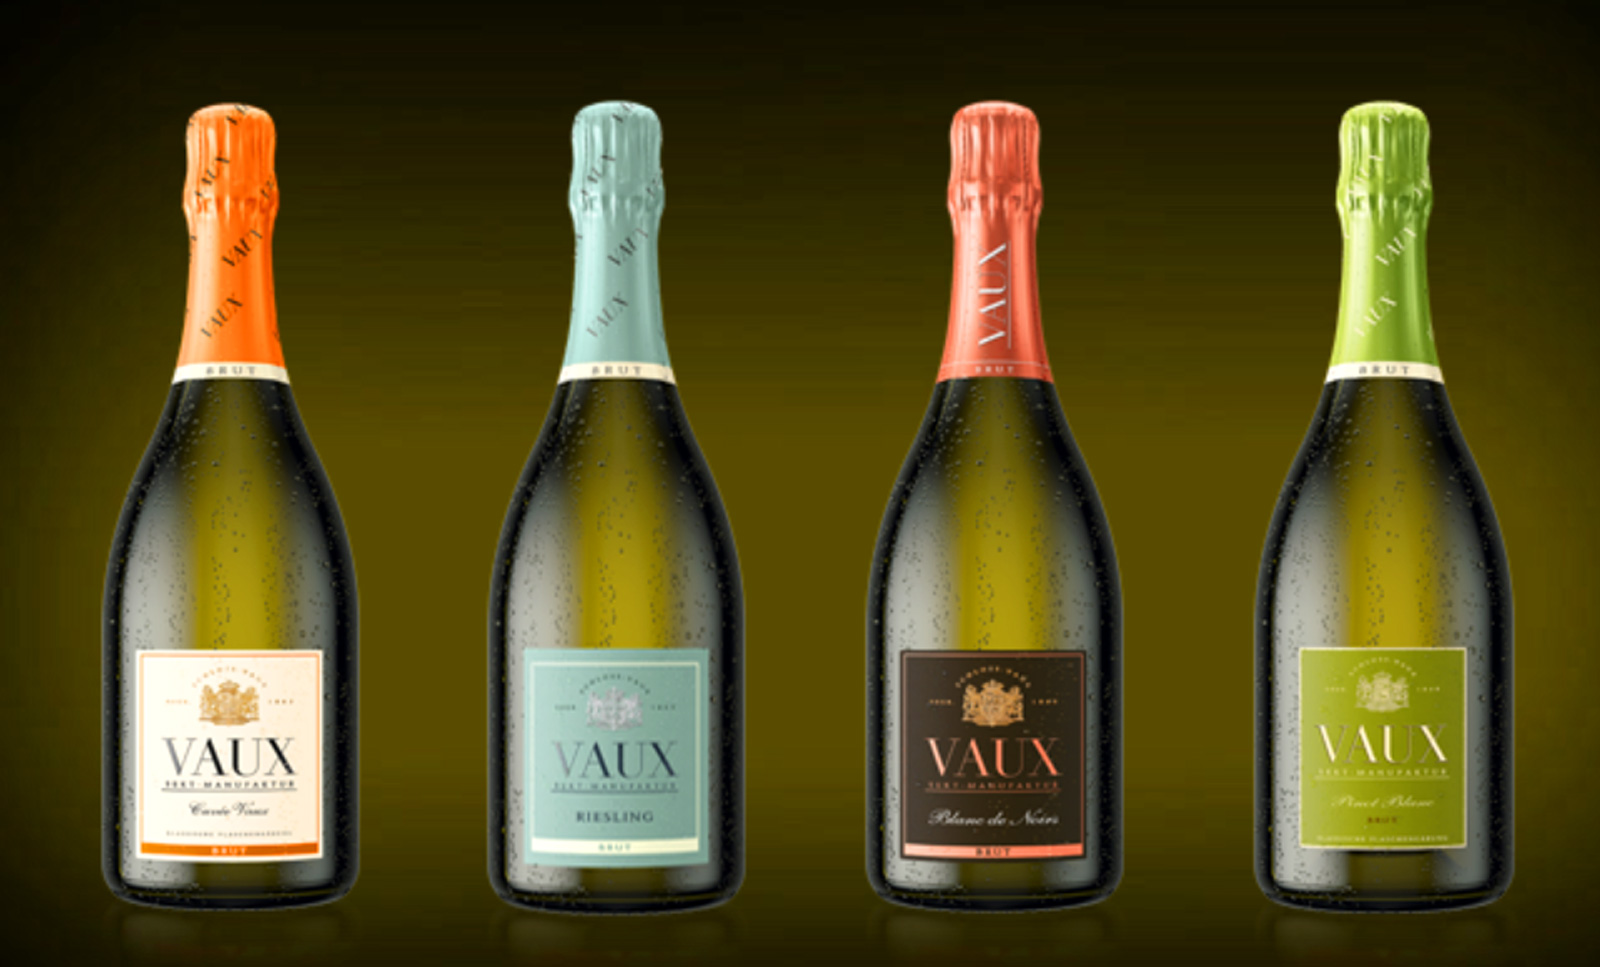 CHAMPAGNE CASTLE VAUX Sva VAUX pjenusava vina proizvedena su tradicionalnom metodom klasicne fermentacije u bocama i brut dozirana.